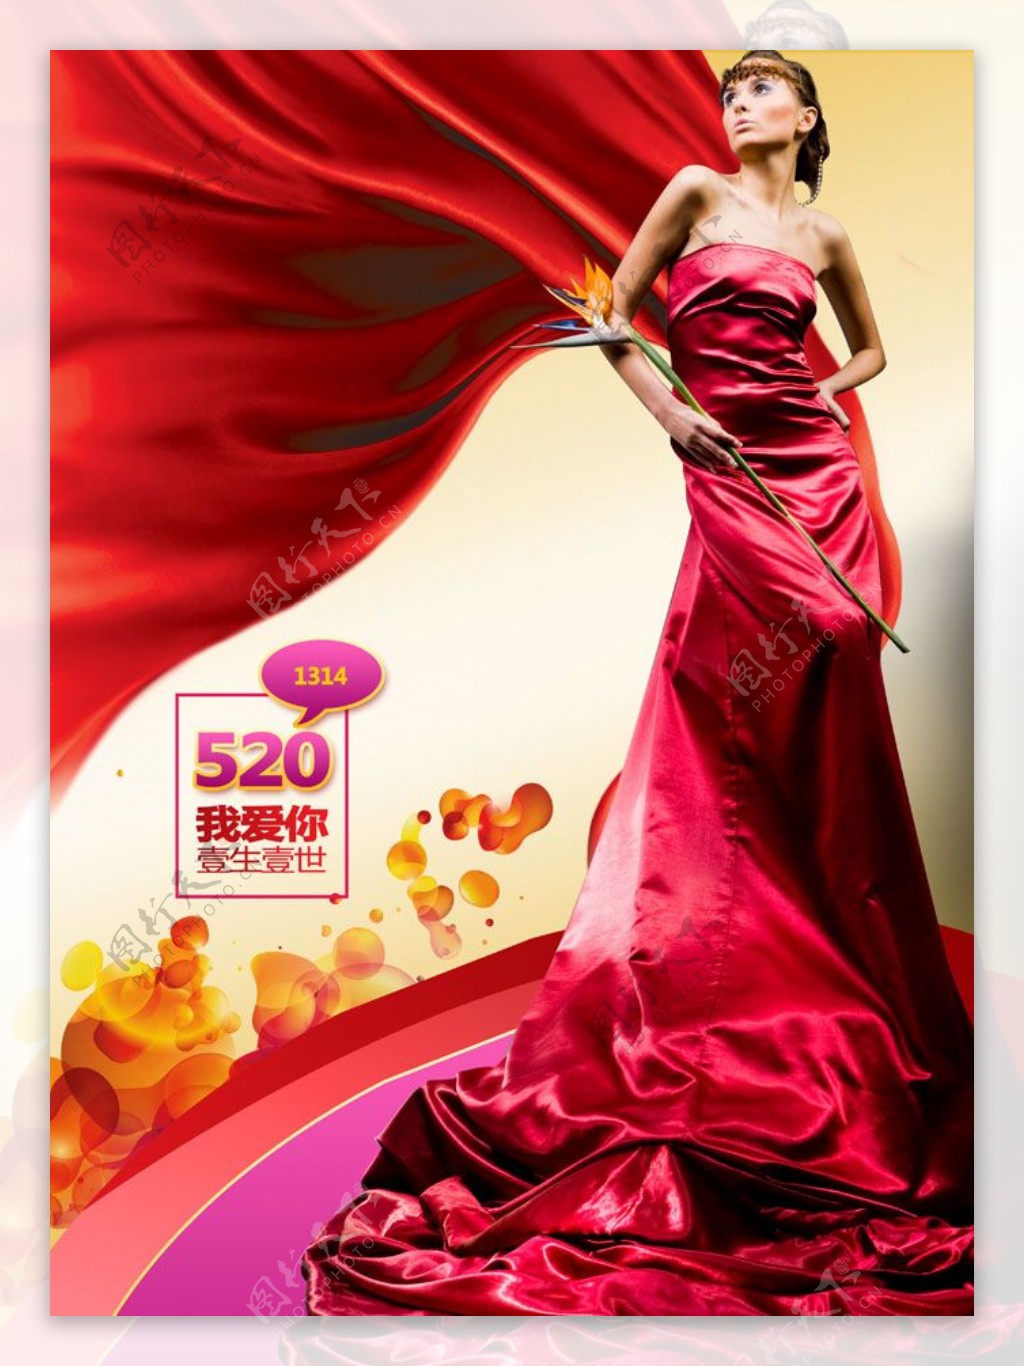 艳丽而深邃的红礼服浓厚的国风色彩雍容华贵的大裙摆气场全开@Par